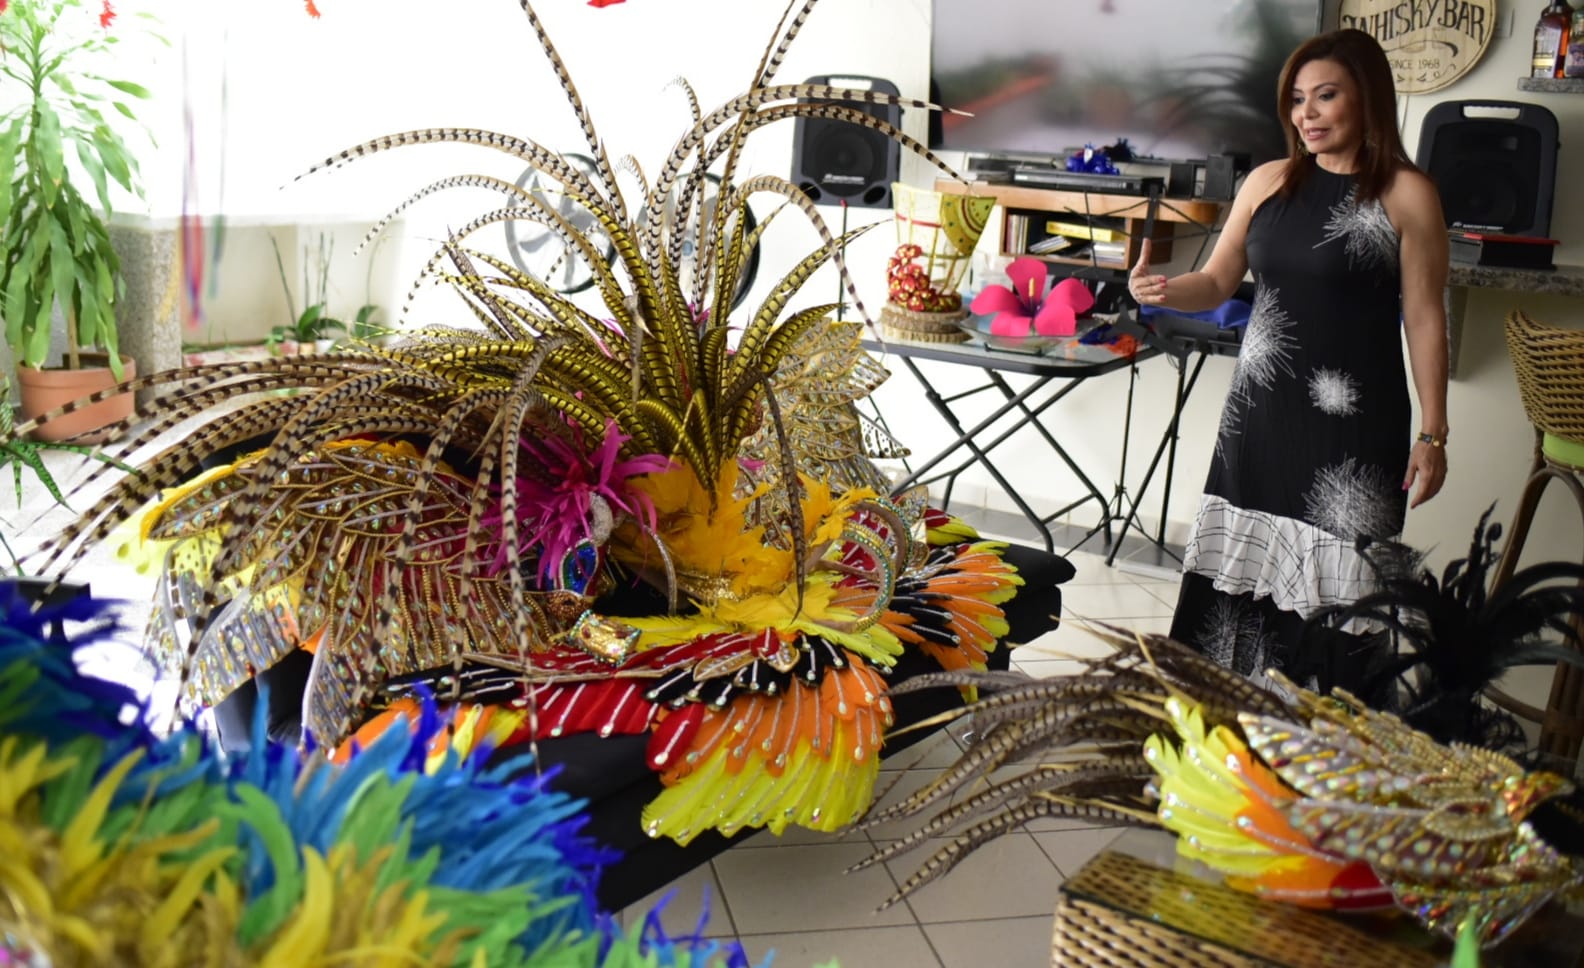 La mamá de la reina, Sandry Salcedo, organiza el vestuario usado por su hija en el Carnaval.